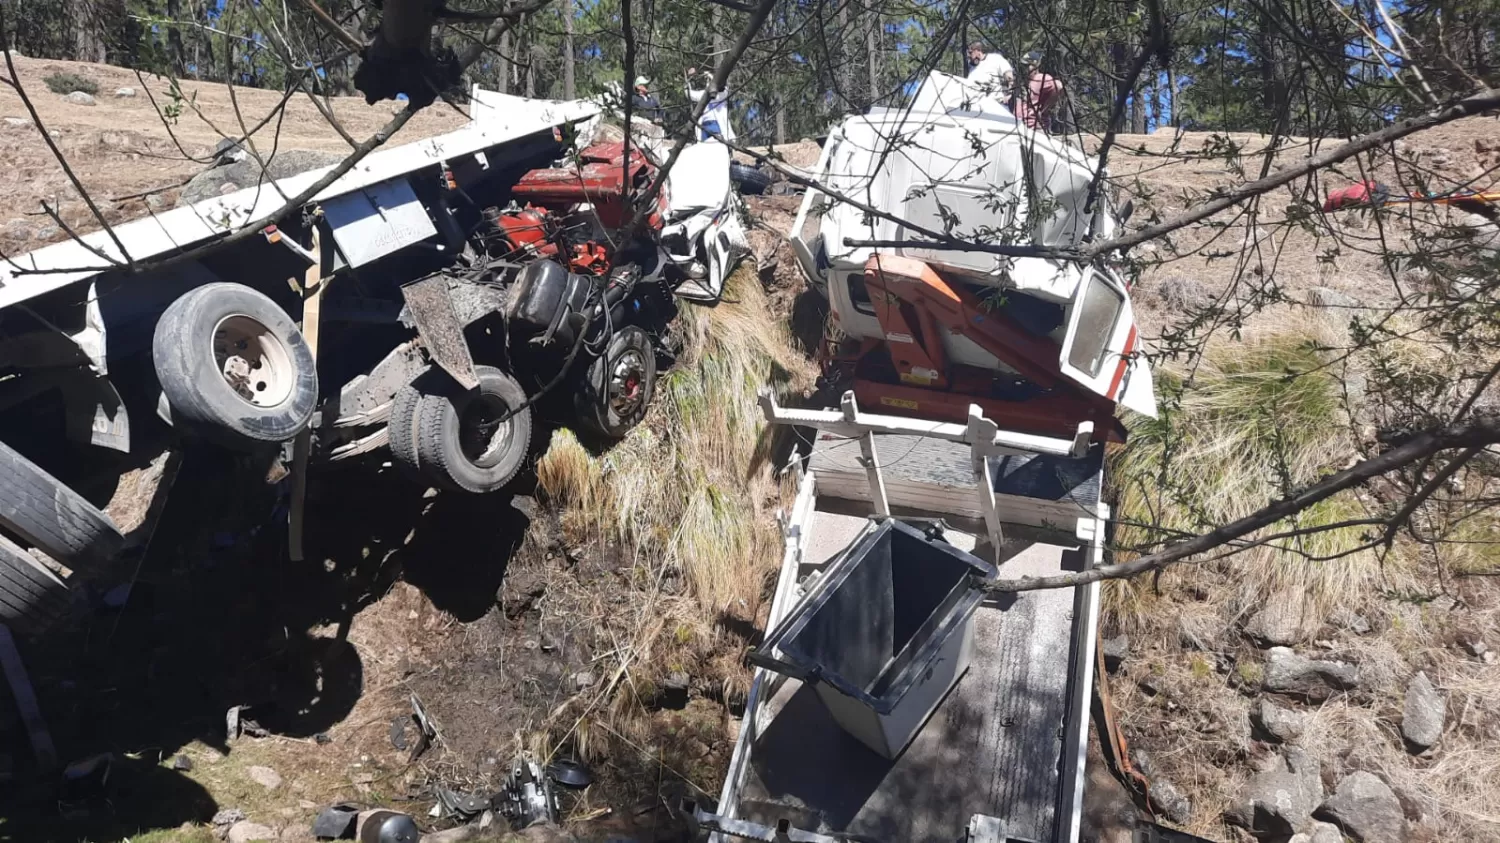 TERRIBLE IMPACTO. Los camiones quedaron destrozados por el siniestro. Foto: Gentileza Policía de Tucumán